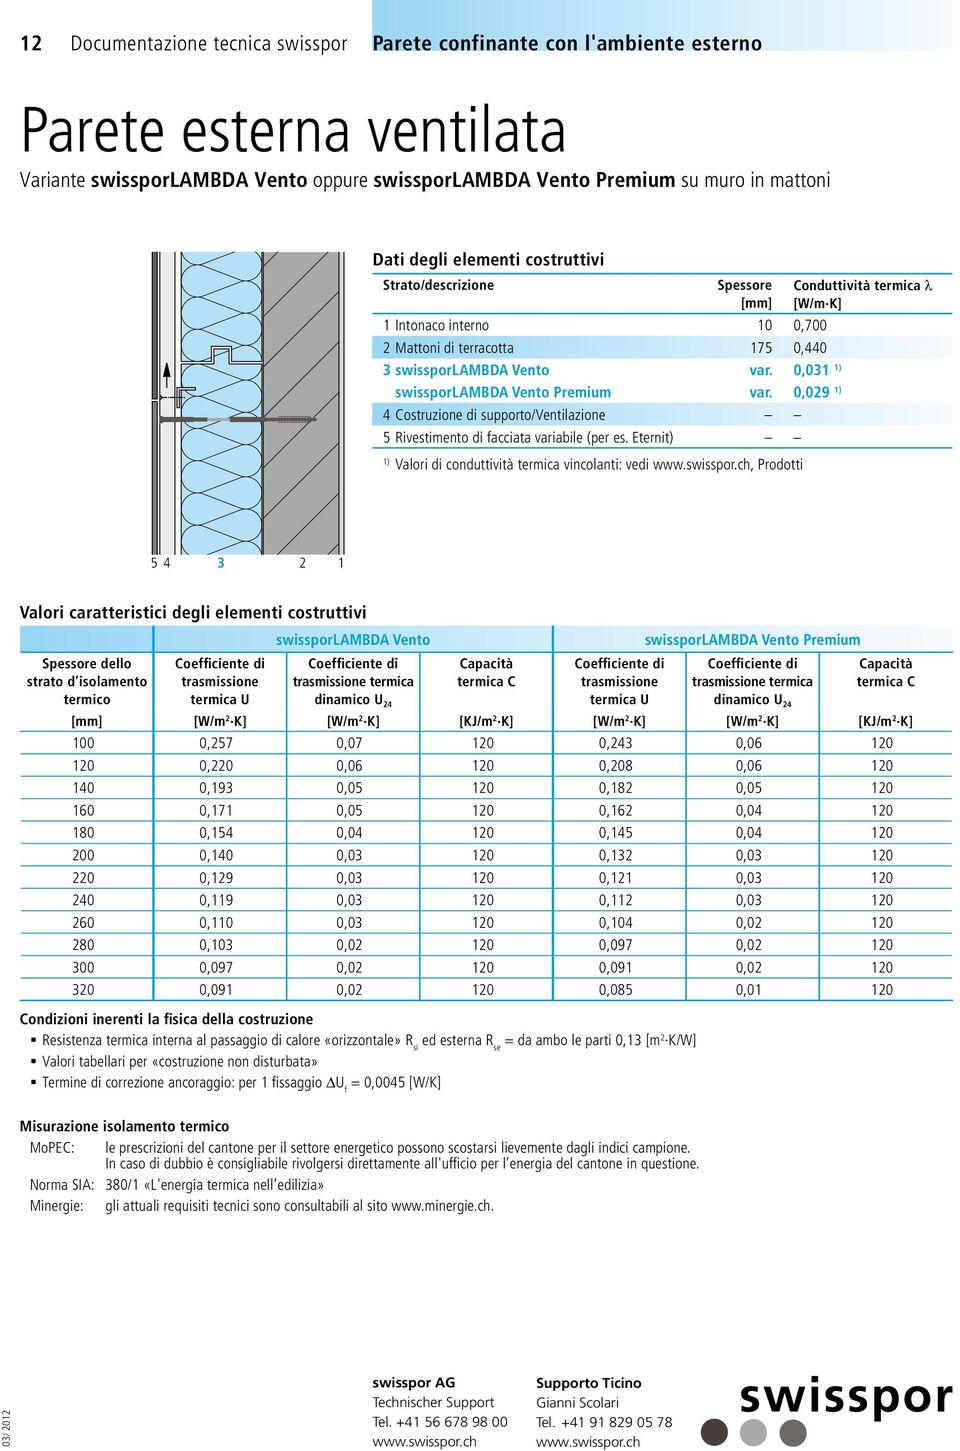 Eternit) ) Valori di conduttività termica vincolanti: vedi, Prodotti 0,03 ) 0,09 ) 5 4 3 swissporlambda Vento swissporlambda Vento Premium dello strato d isolamento Capacità termica C Capacità